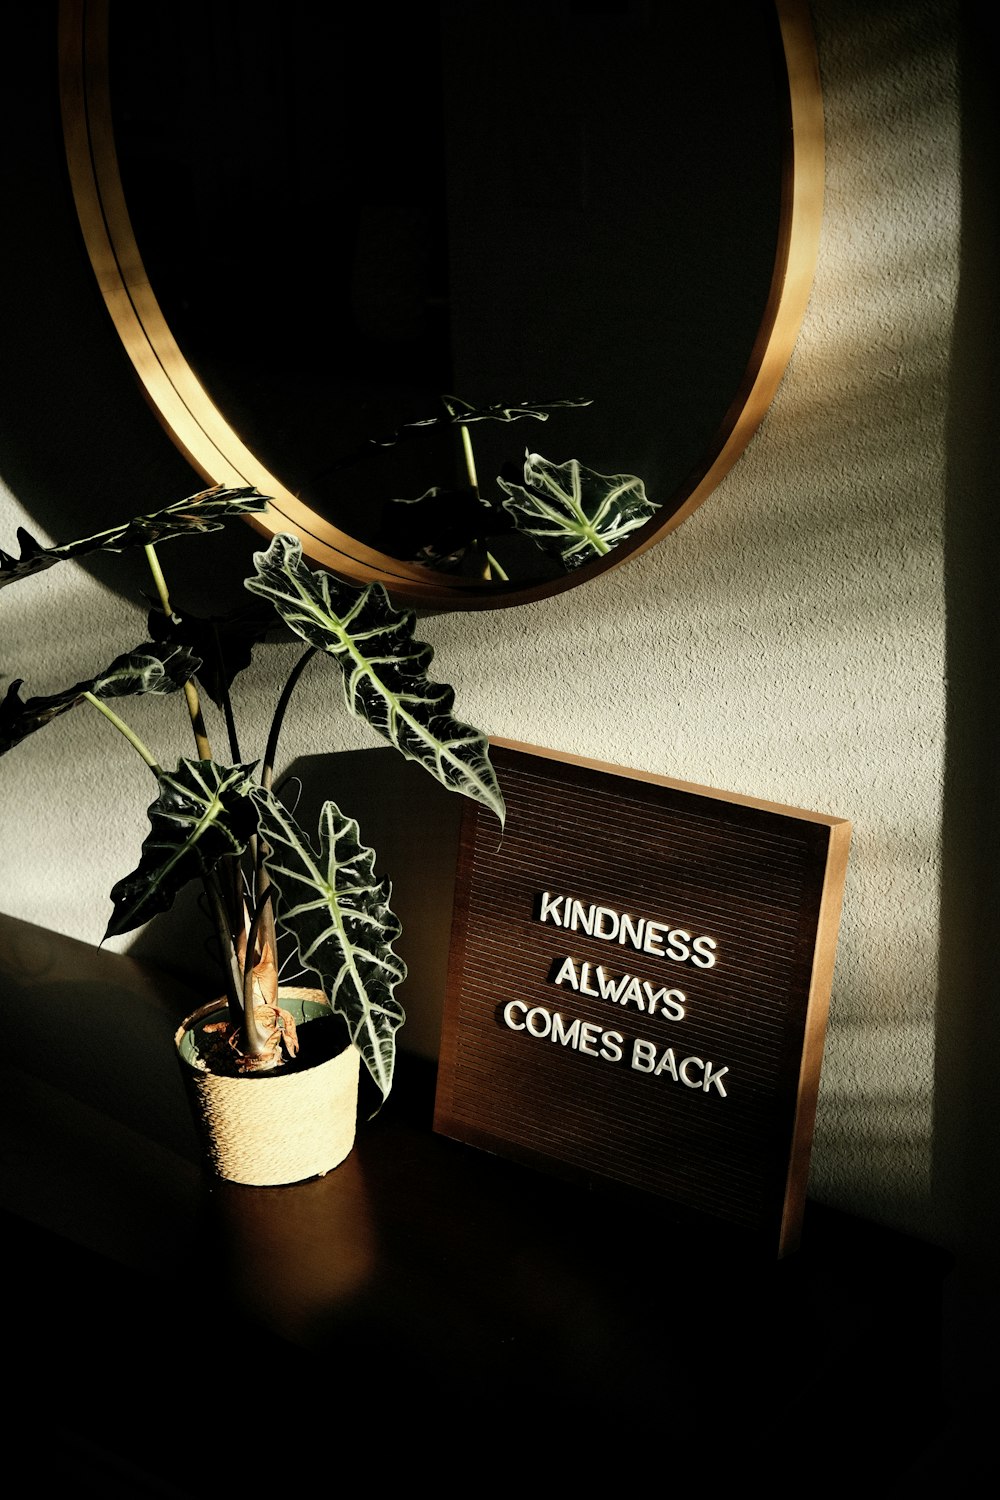 Una pianta in vaso accanto a un cartello che dice che la gentilezza torna  sempre foto – Pianta in vaso Immagine gratuita su Unsplash